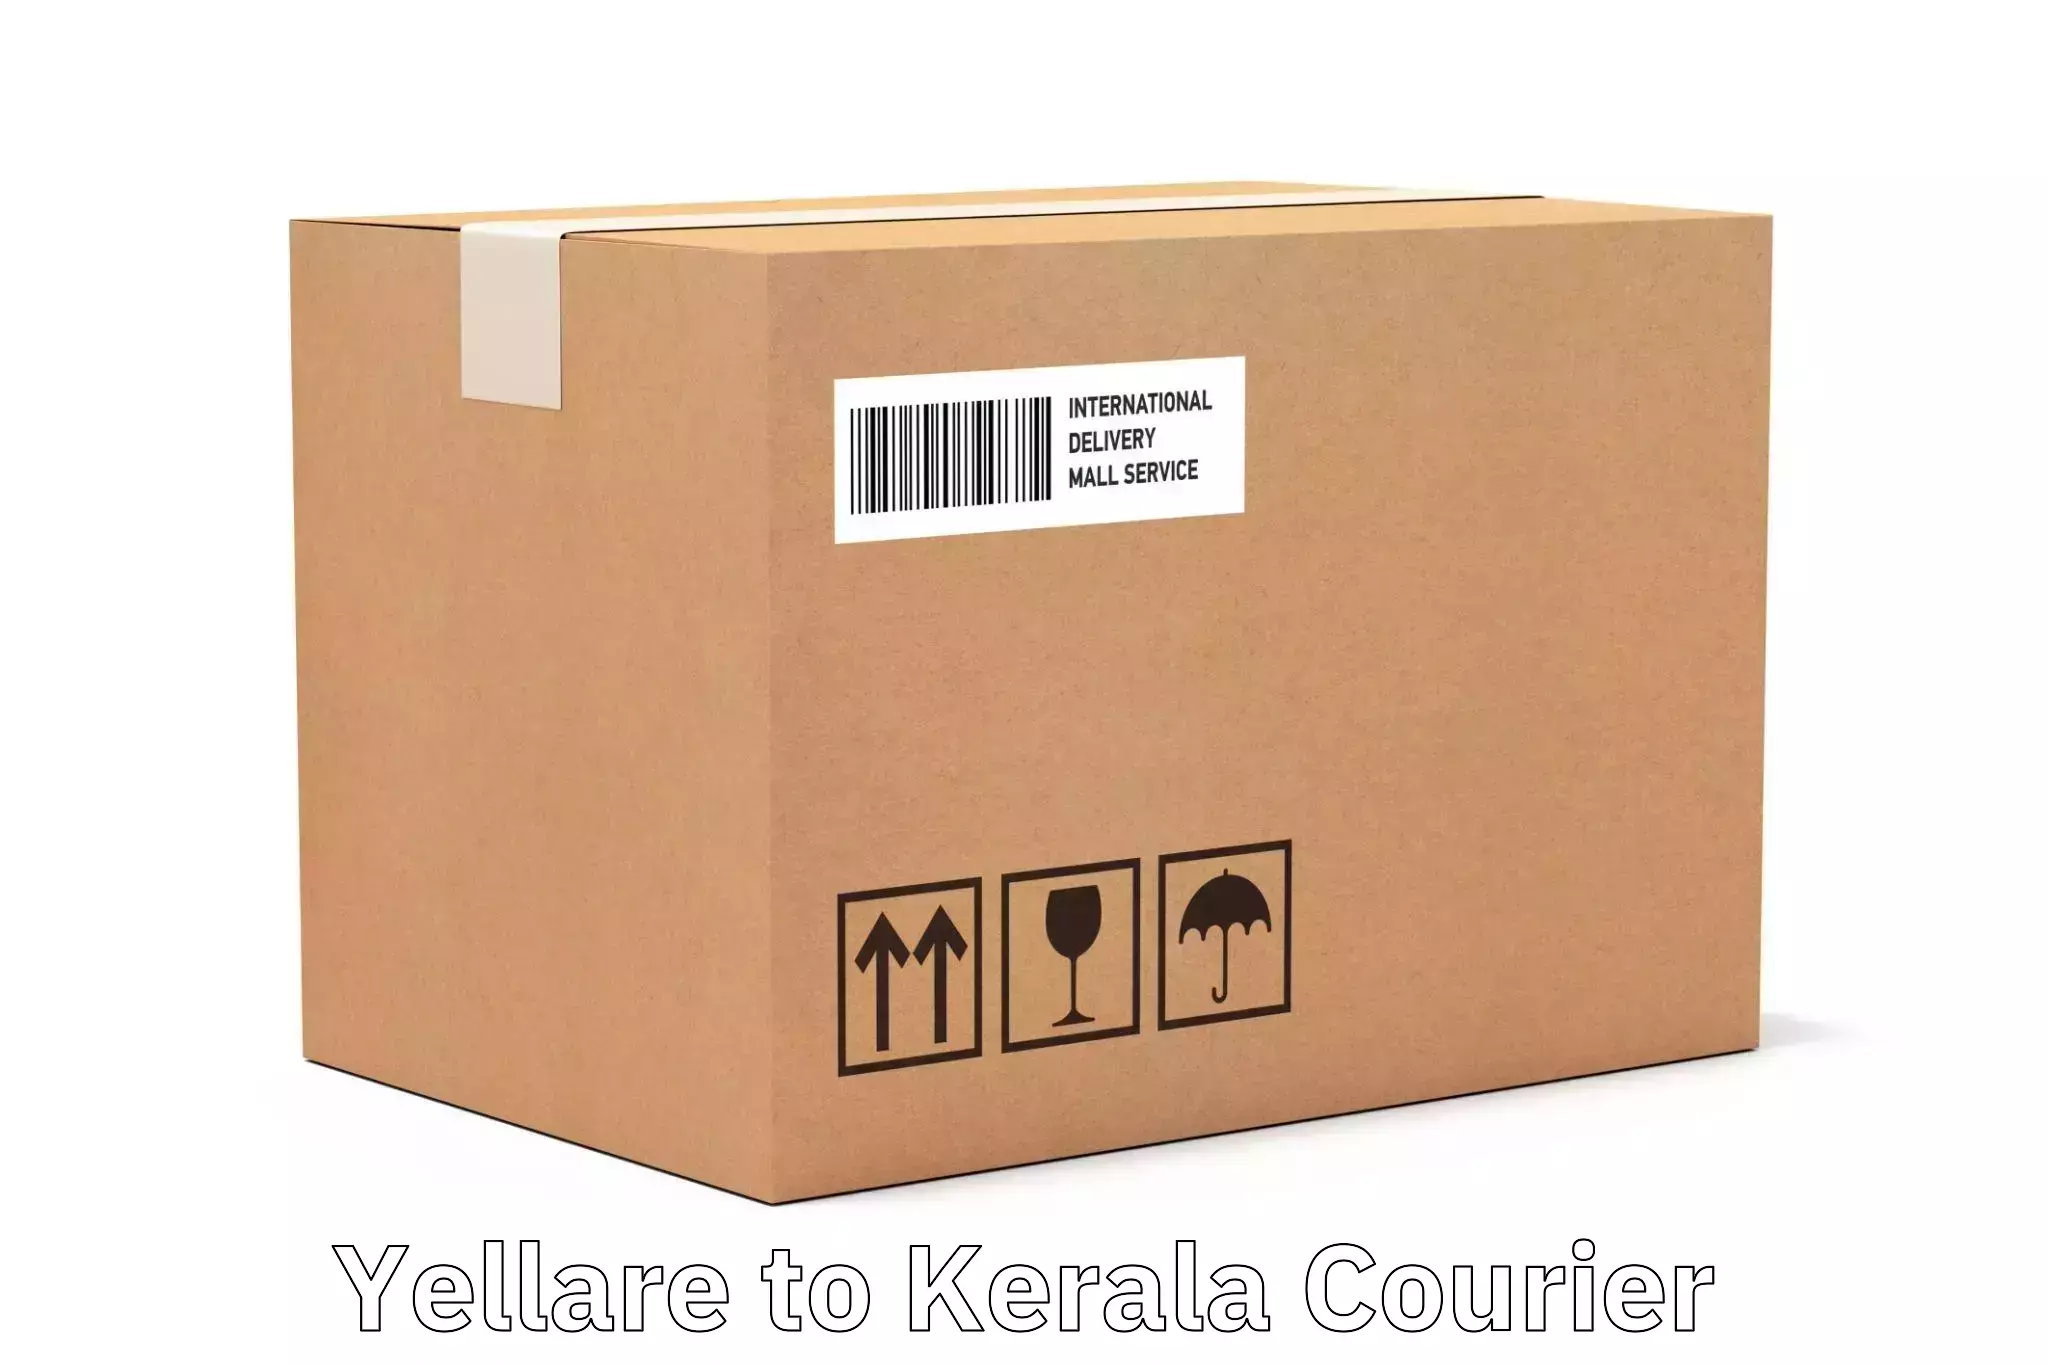 Cost-effective courier options Yellare to Koothattukulam